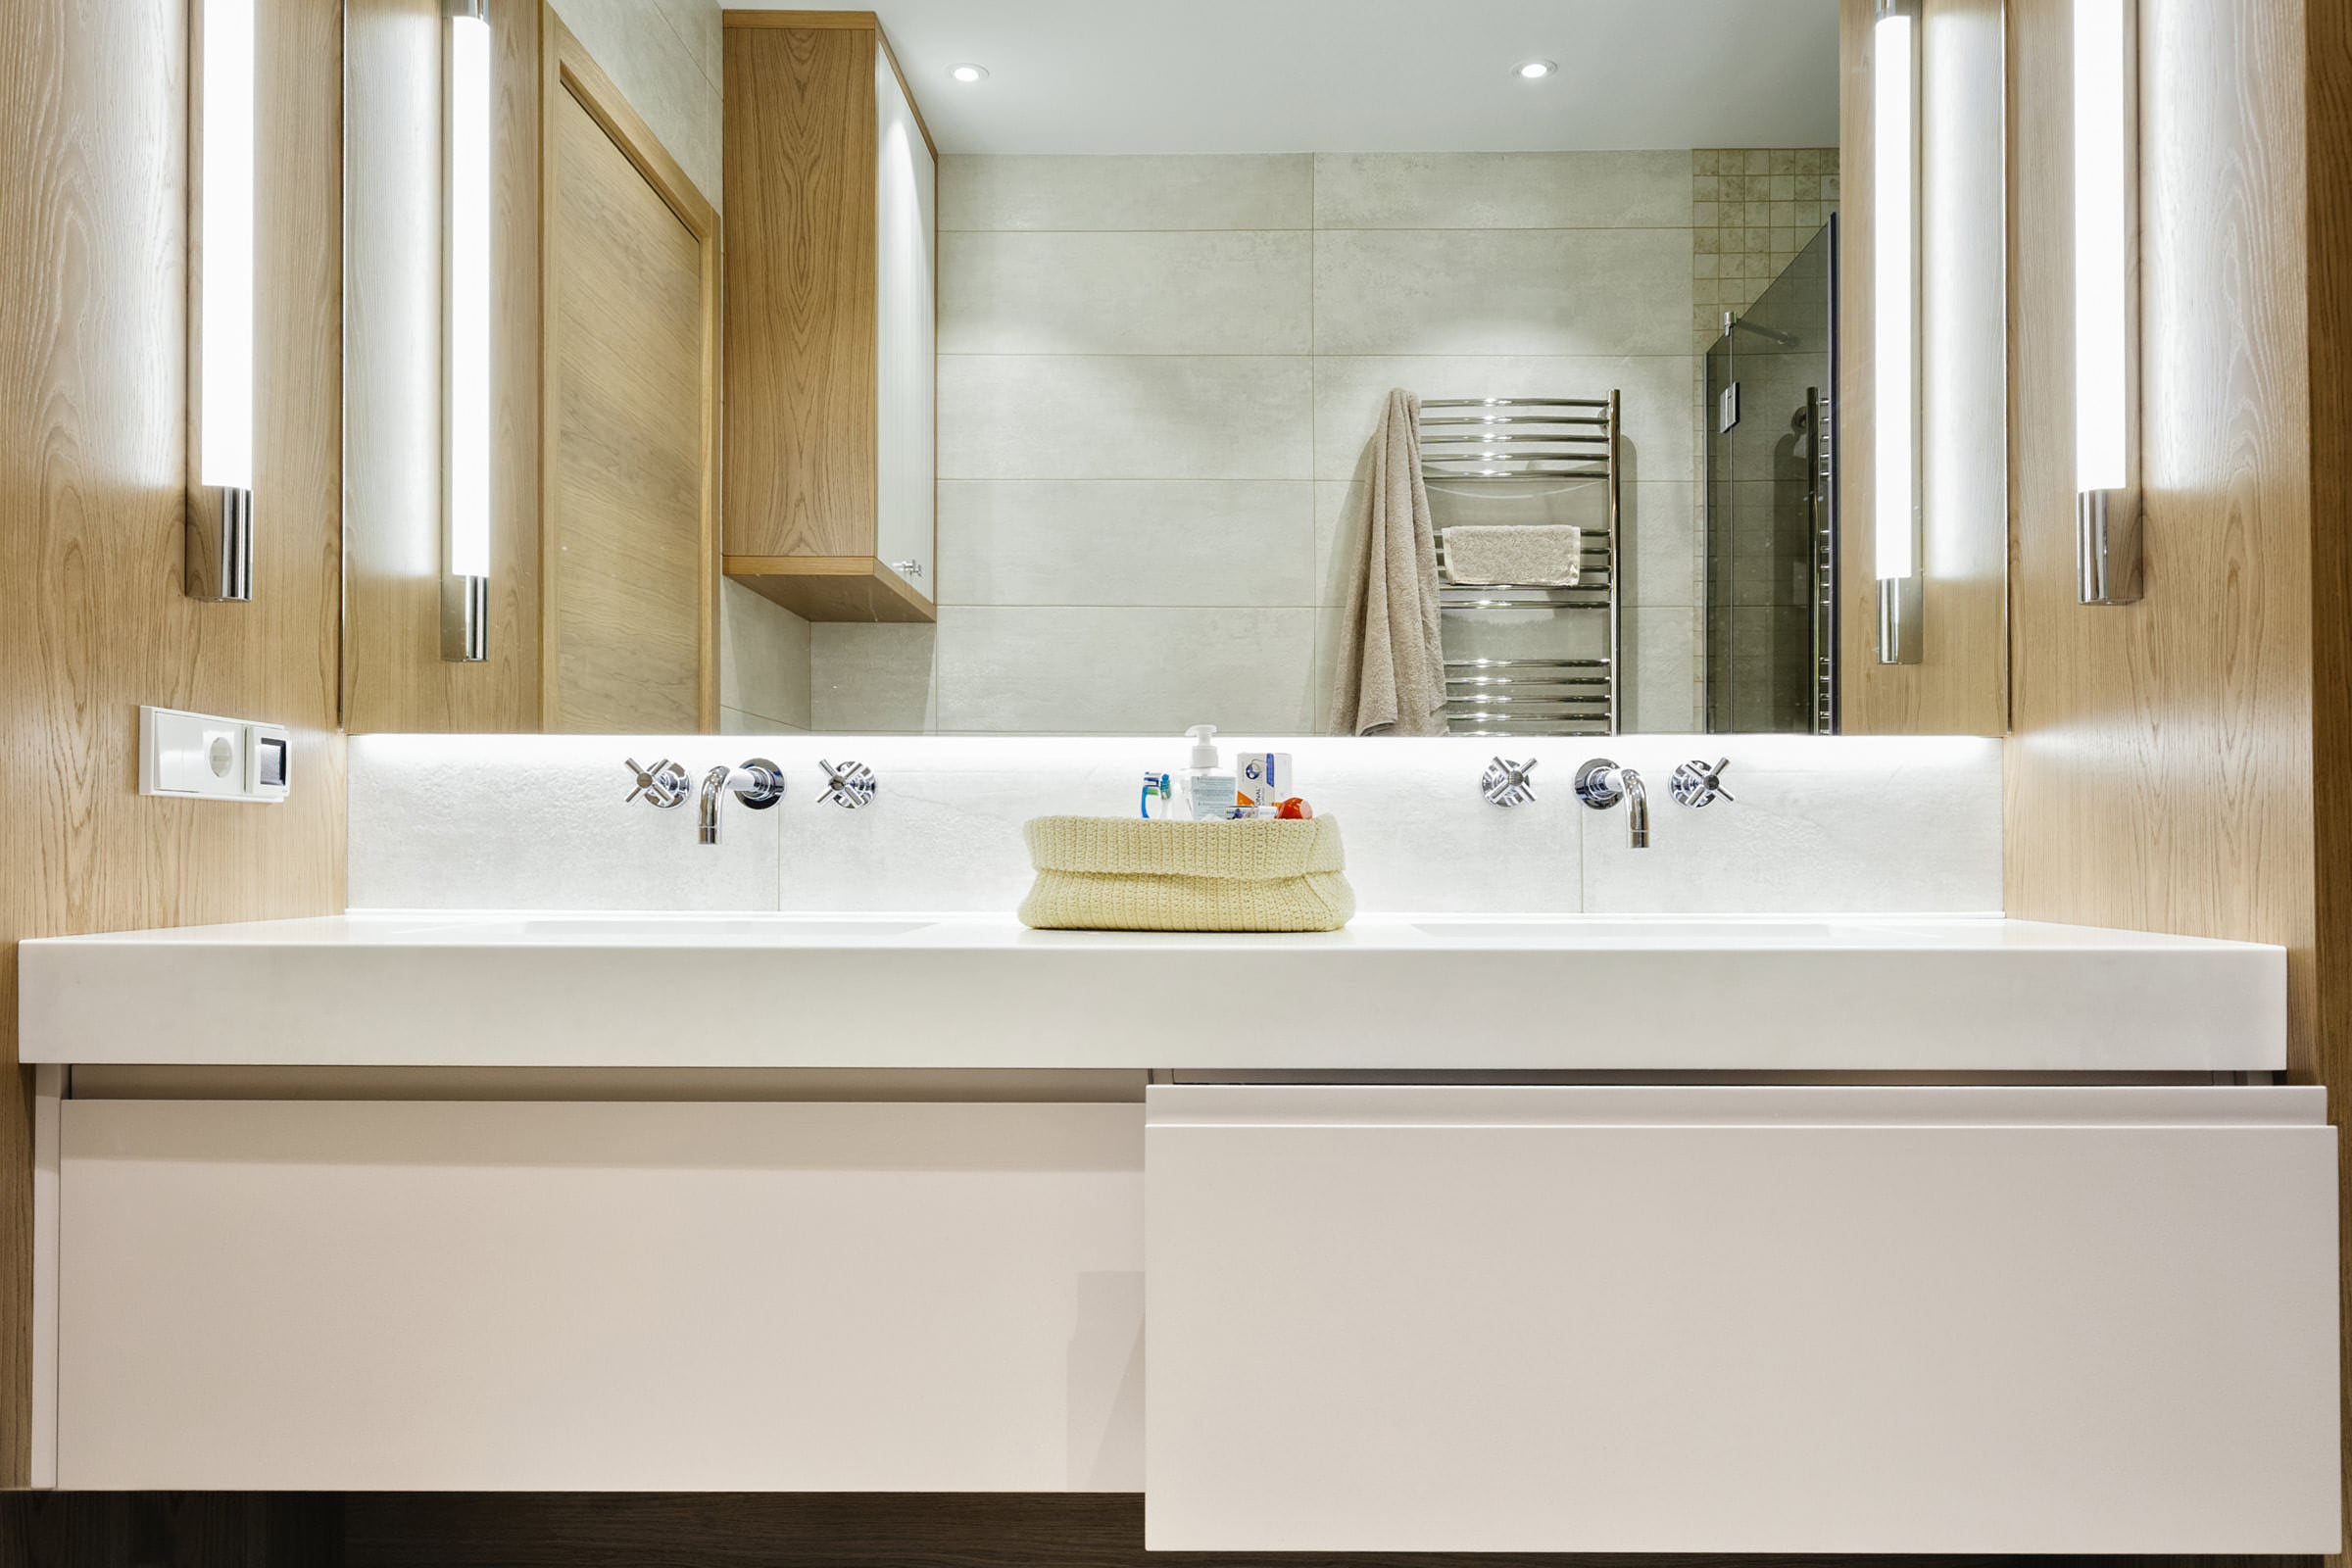 Интерьерное фотография ванной комнаты с умывальником, большим зеркалом с подсветкой и душевой кабиной для портфолио изготовителя элитной деревянной мебели